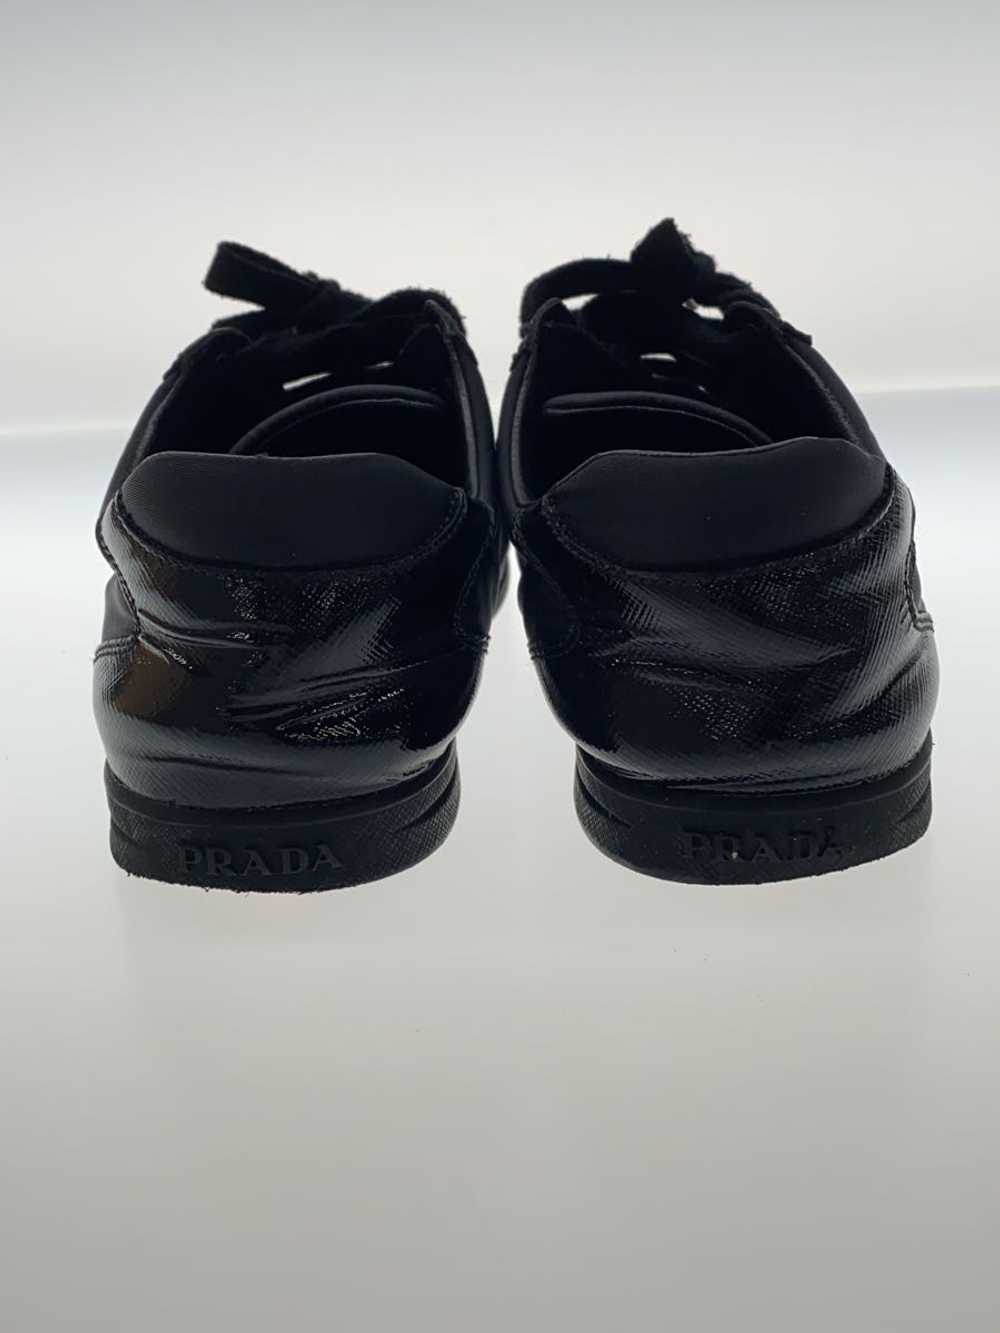 Prada Tessuto/Low Cut Sneakers/37/Blk/Black/Nylon… - image 6